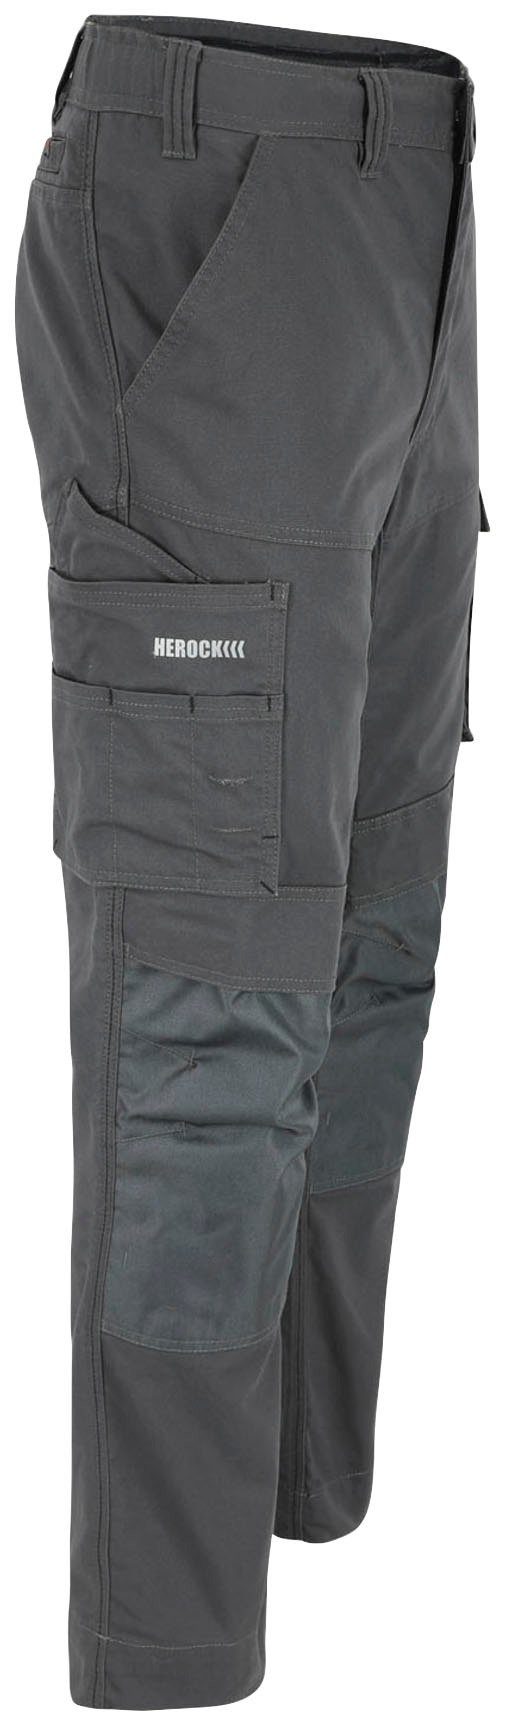 Herock Arbeitshose SOCRES Multi-pocket, 2-Wege-Stretch, wasserabweisend bequem beschichtet, grau